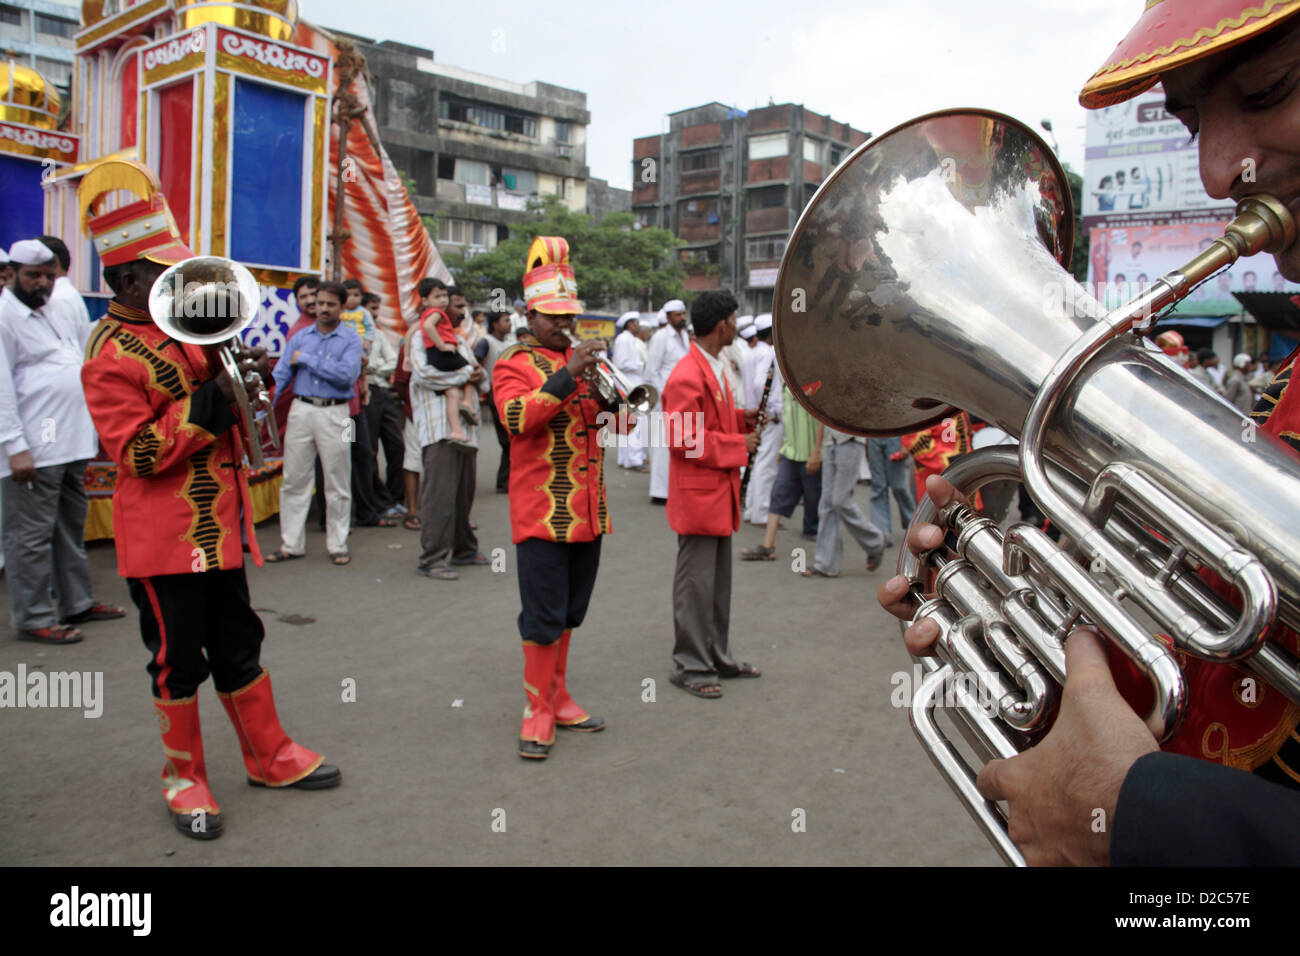 L'euphonium jouer musicien dans un groupe, au cours d'une procession religieuse en Inde Banque D'Images